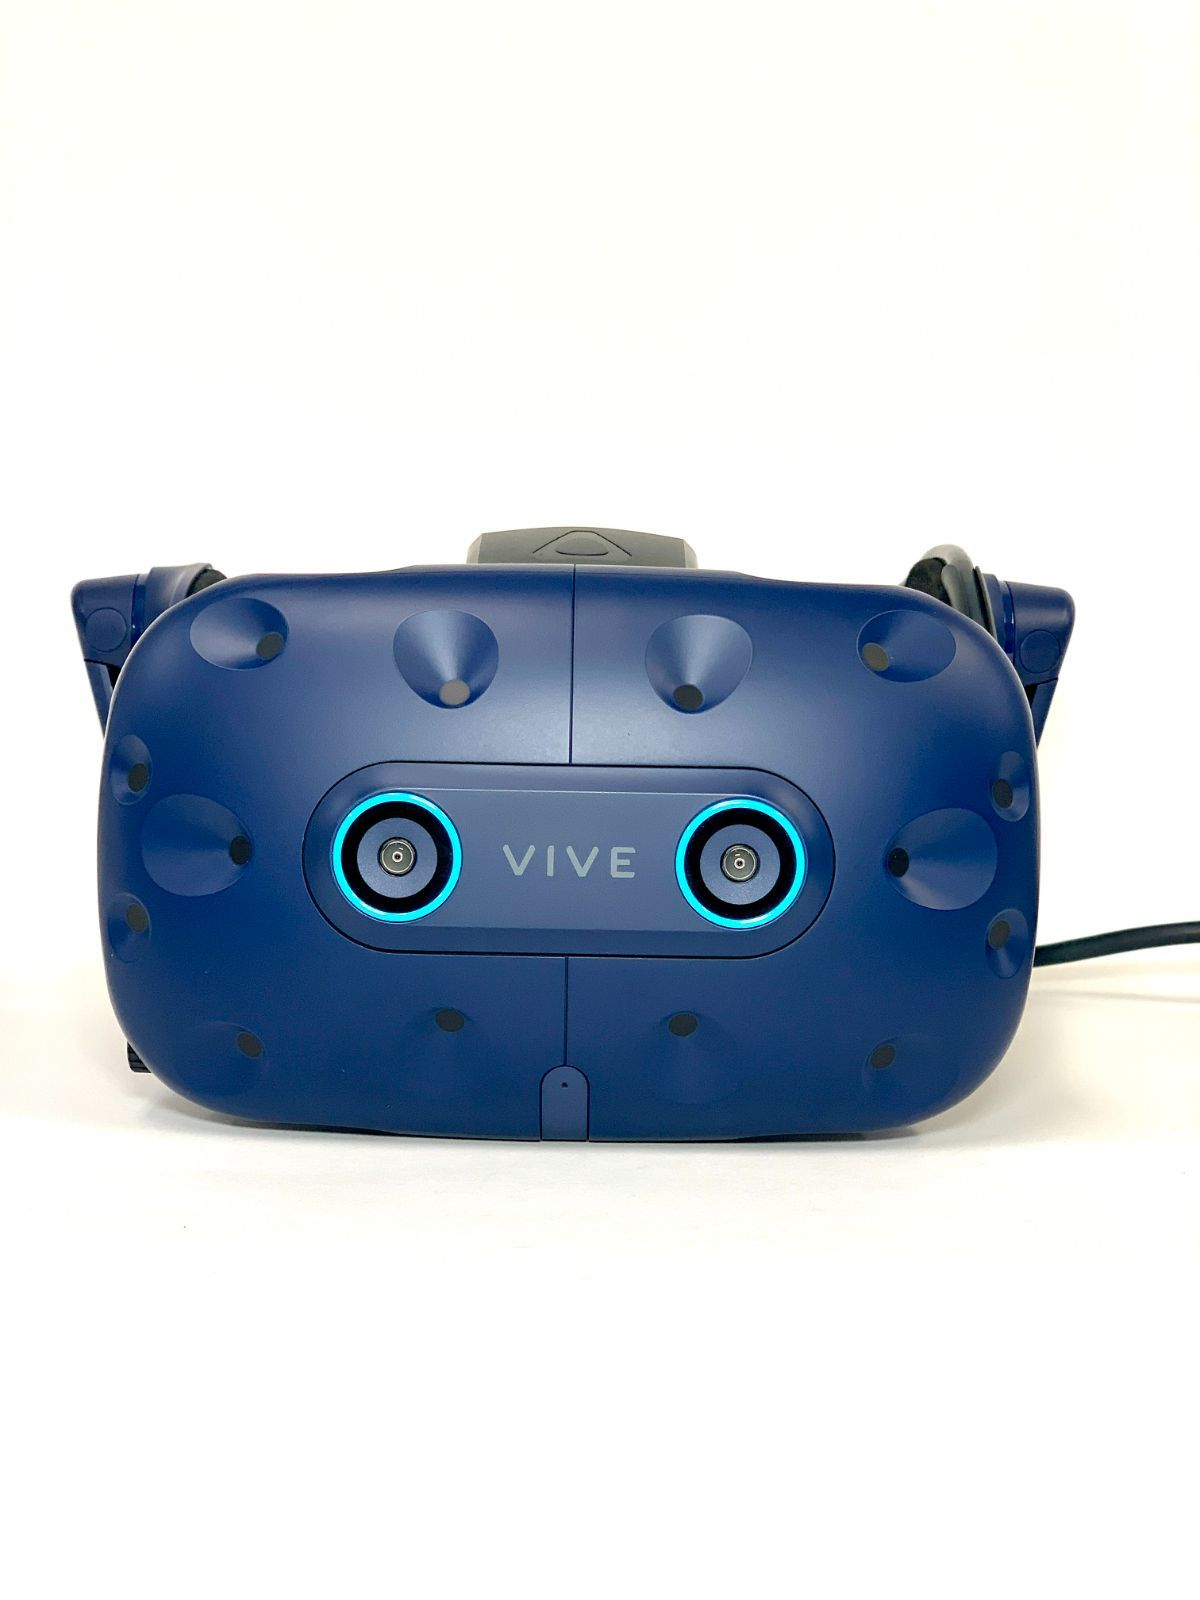 VIVE Pro Eye HMD - メルカリ